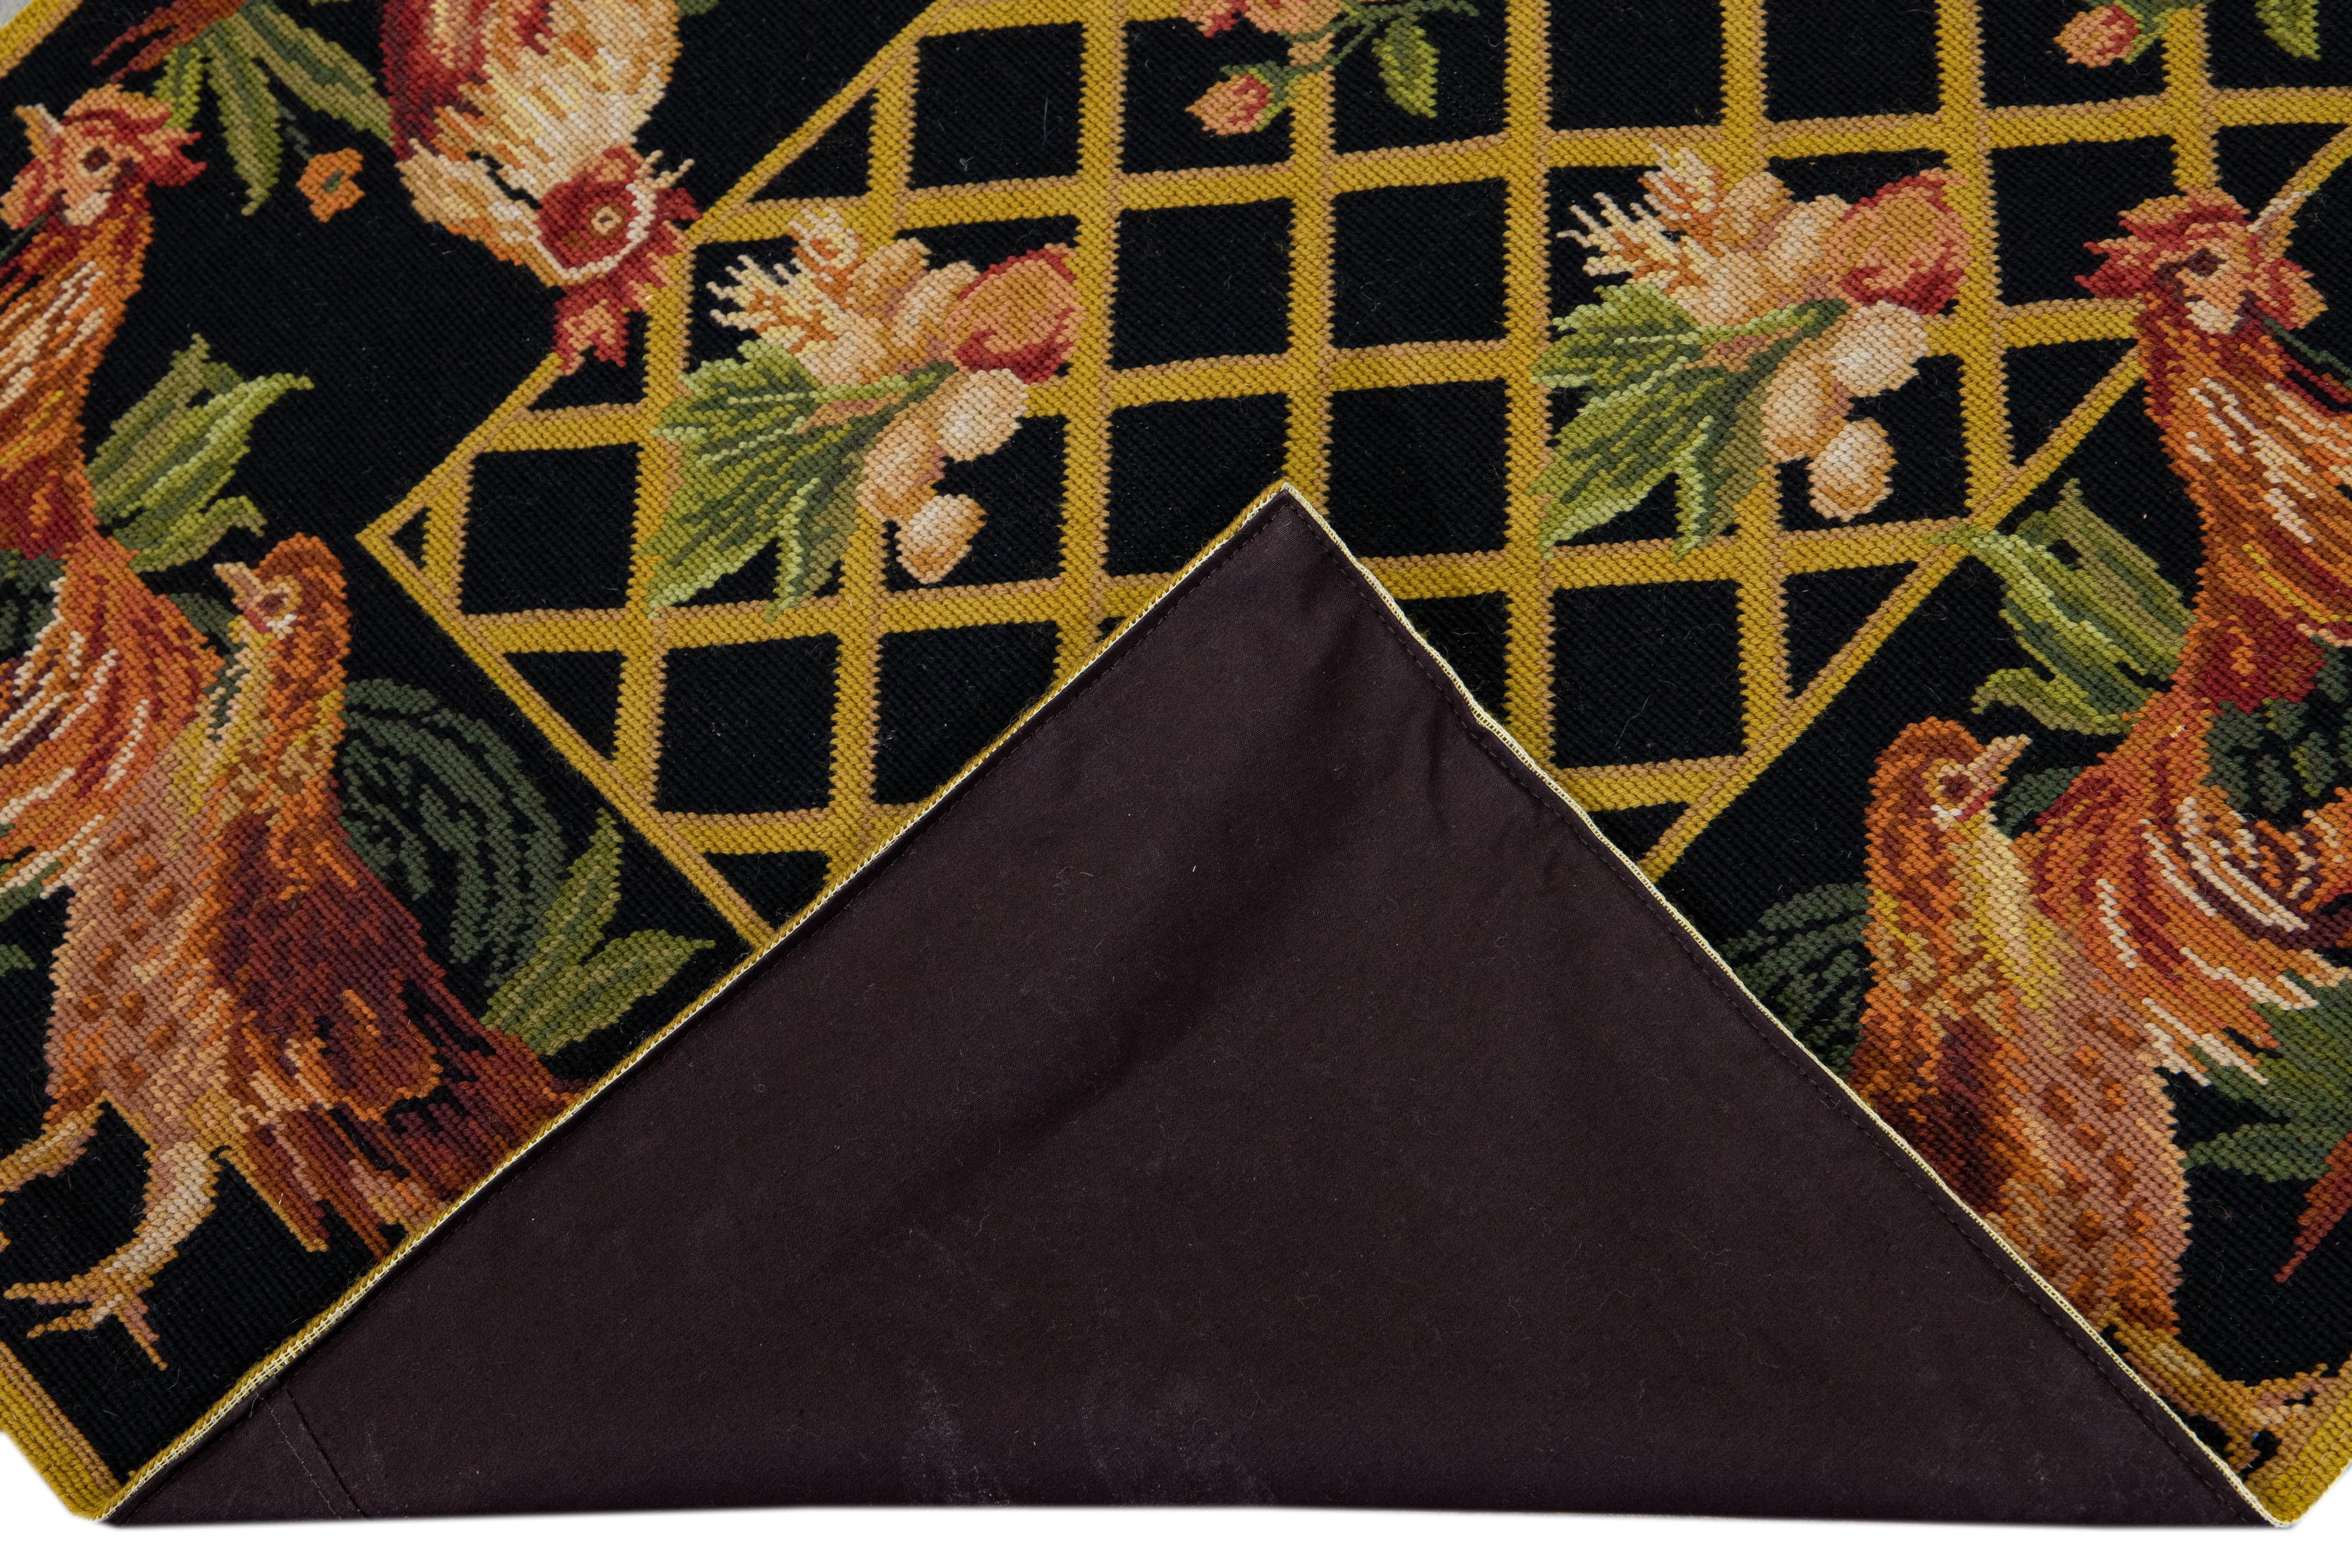 Schöne Vintage Aubusson Nadelspitze Wolle Läufer mit einem schwarzen Feld. Dieses Stück hat ein malerisches Muster, das sich durch das gesamte Design zieht.

Dieser Teppich misst 3' x 9'9